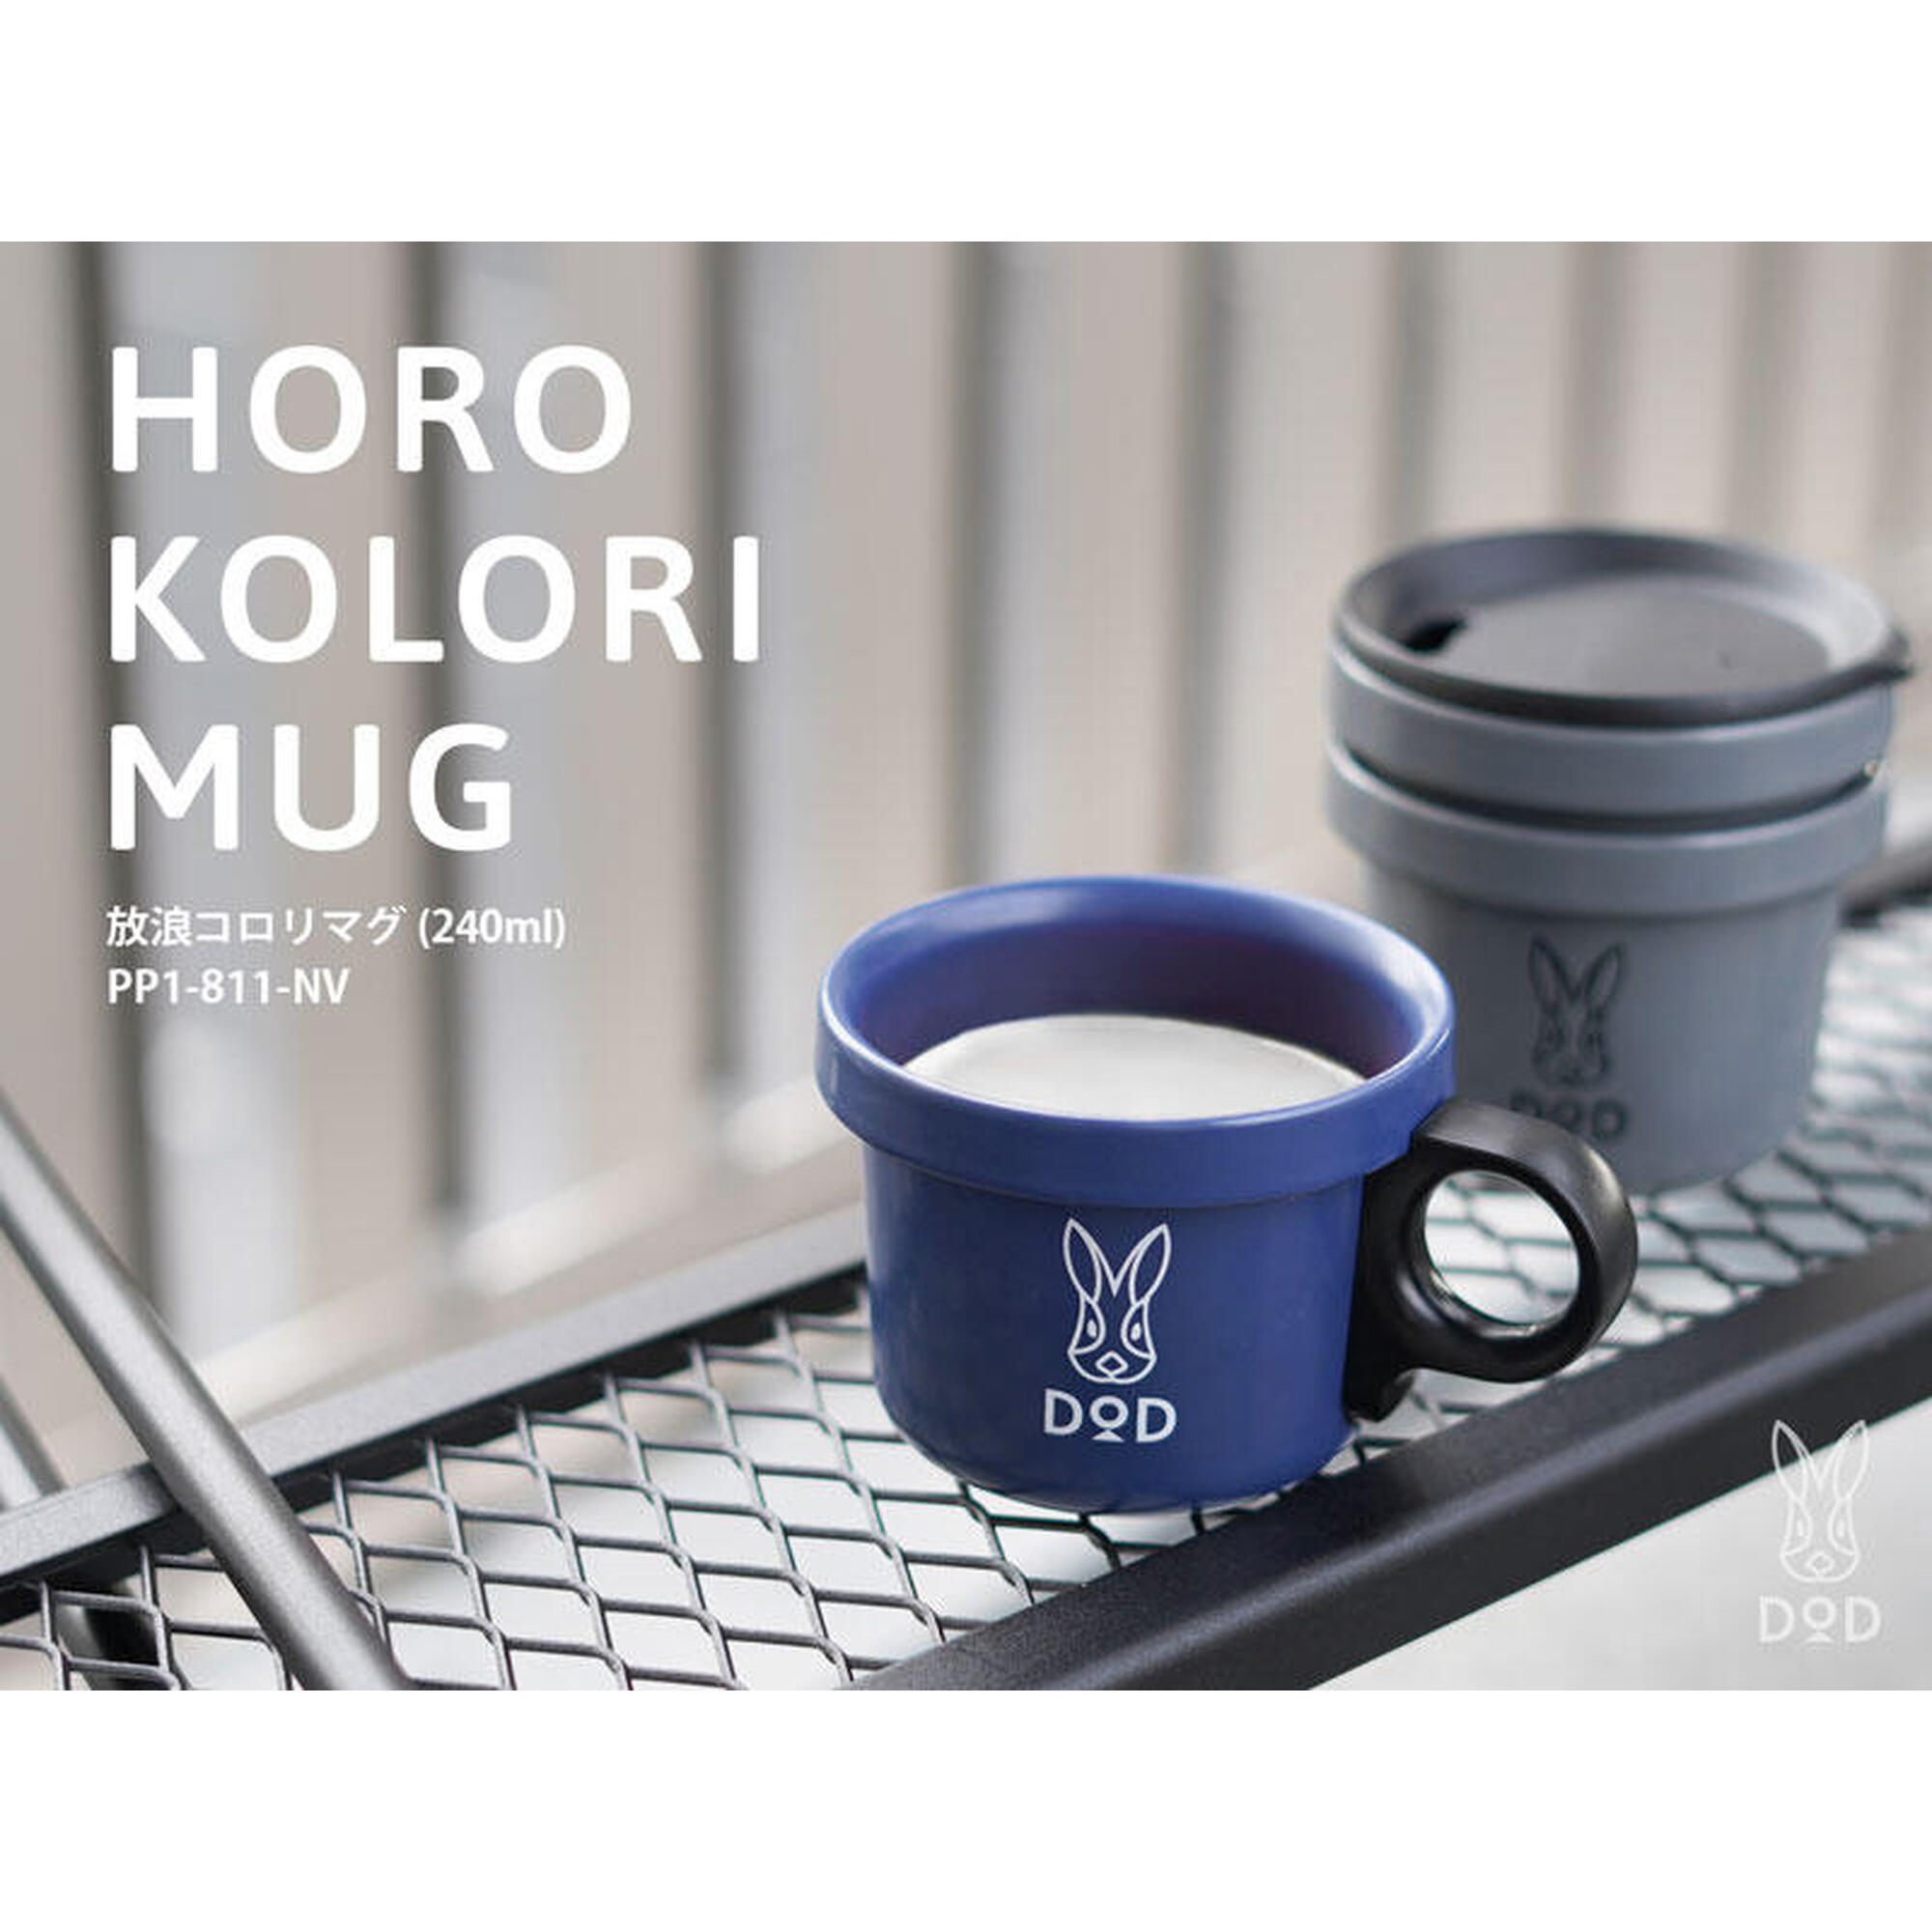 Horo Kolori 戶外露營杯 240ml - 海軍藍